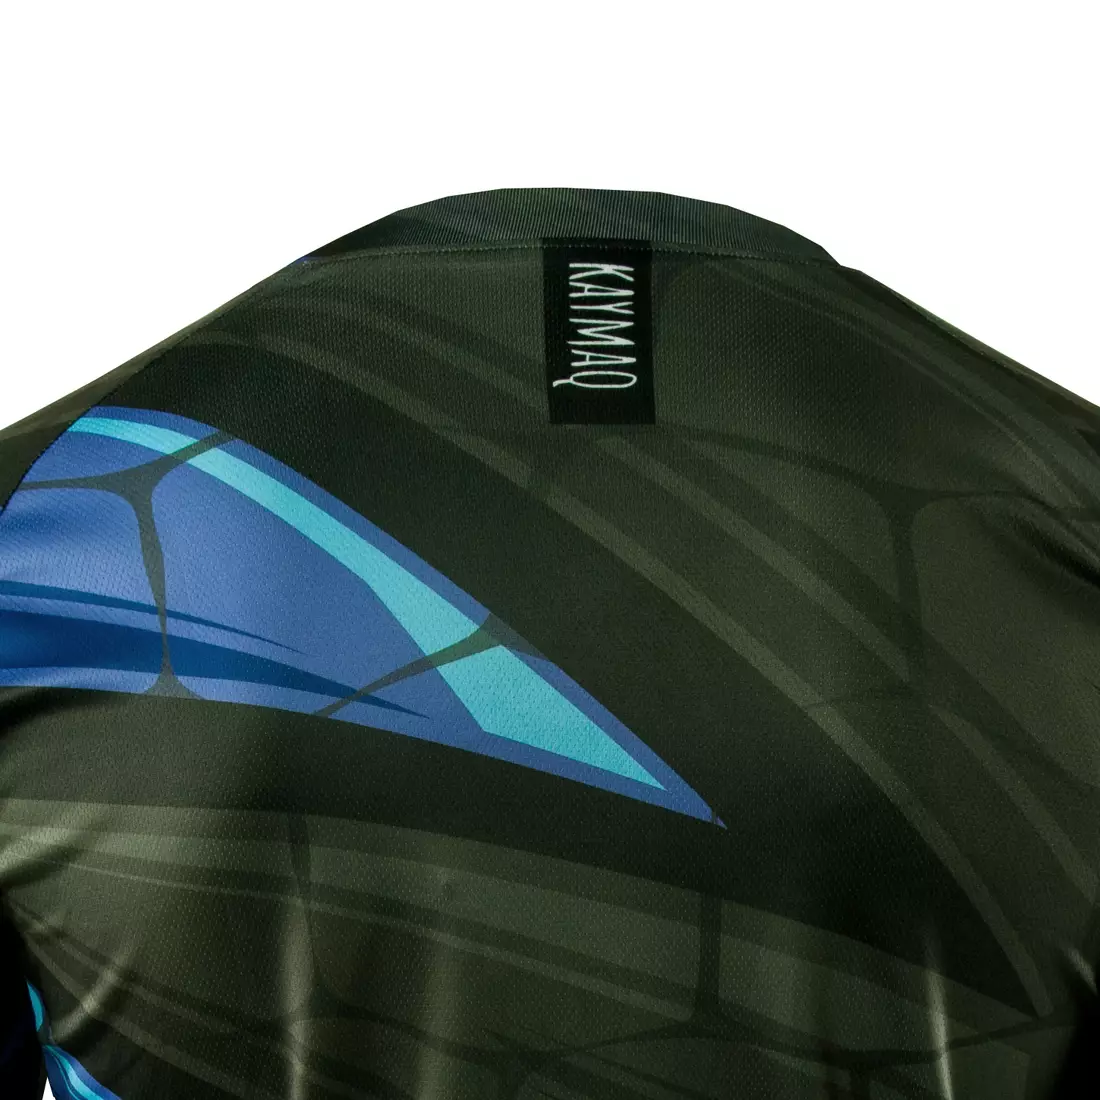 KAYMAQ DESIGN M64 pánsky voľný MTB cyklistický dres, Modrá